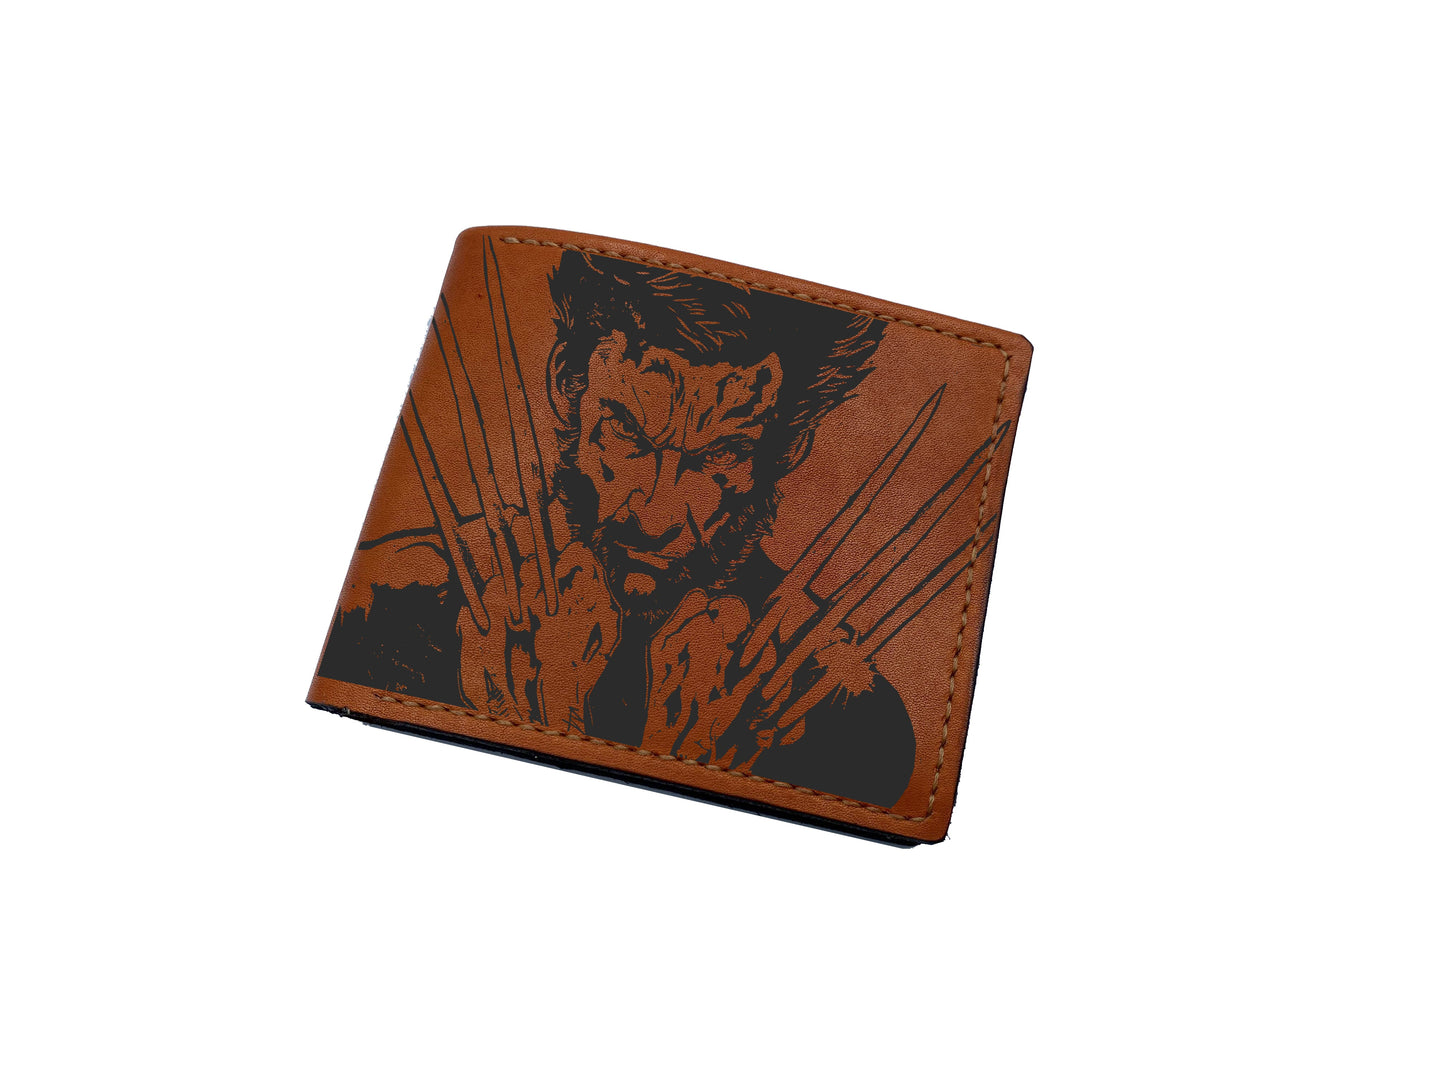 Mayan Corner - Wolverine Logan superheroes leather handmade wallet, superheroes marvel wallet for men - 2710222